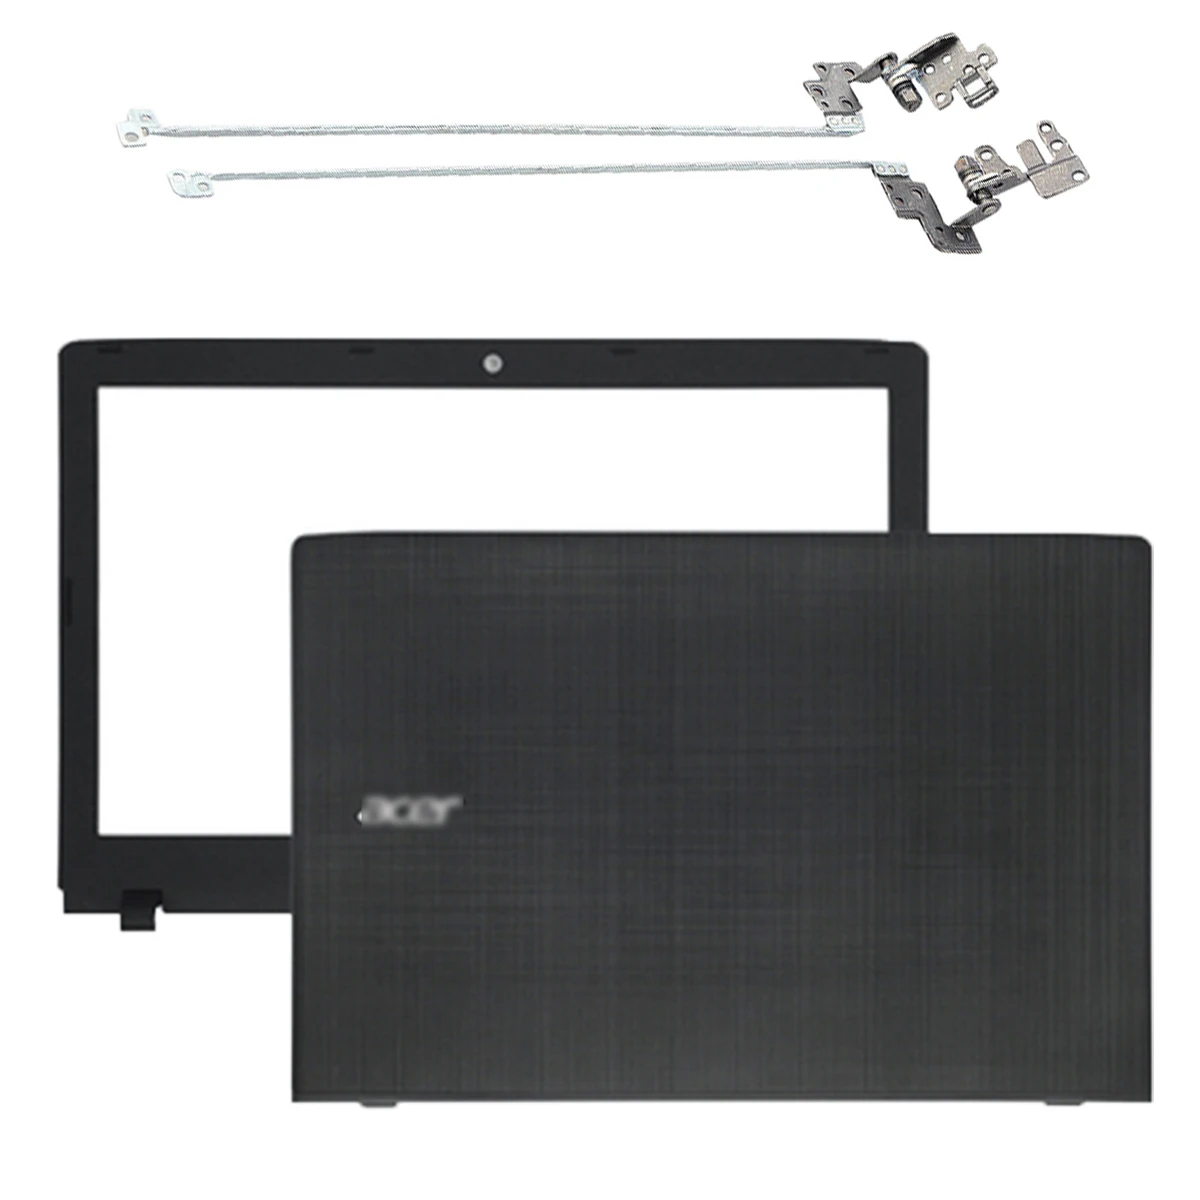 

Brand New Laptop LCD Back Cover/Front Bezel/Hinges For Acer Aspire E5-575 E5-575G E5-553 E5-523 TMP259 TMTX50 60.GDZN7.001 Balck